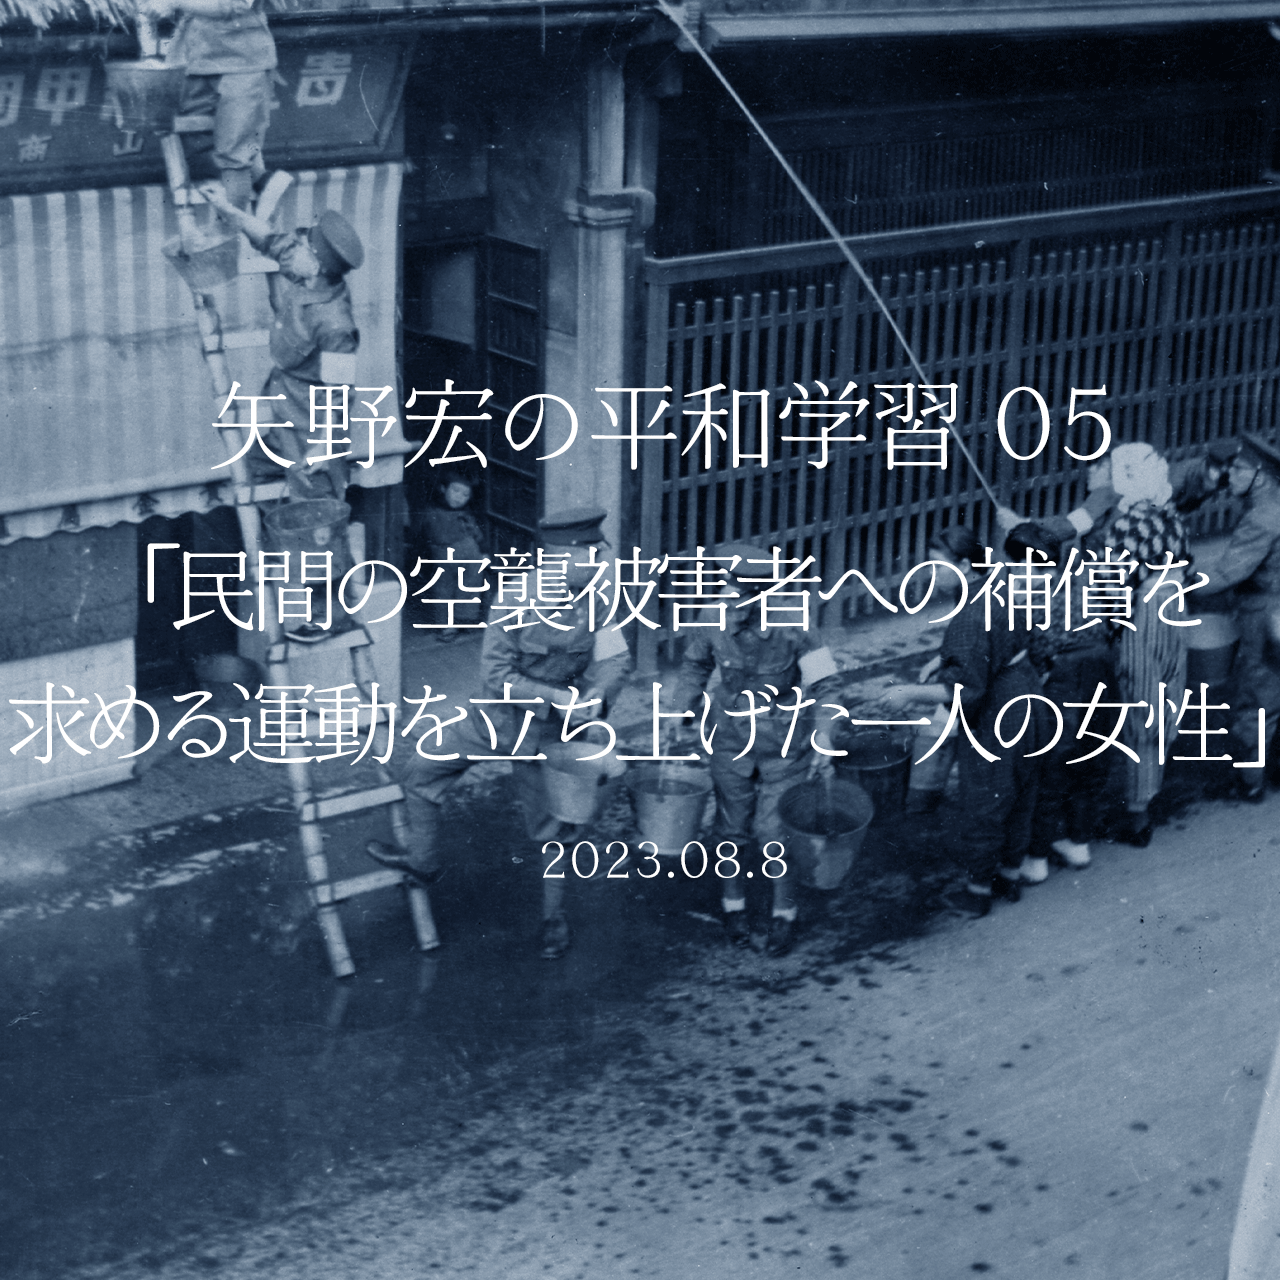 矢野宏の平和学習 05「民間の空襲被害者への補償を求める運動を立ち上げた一人の女性」